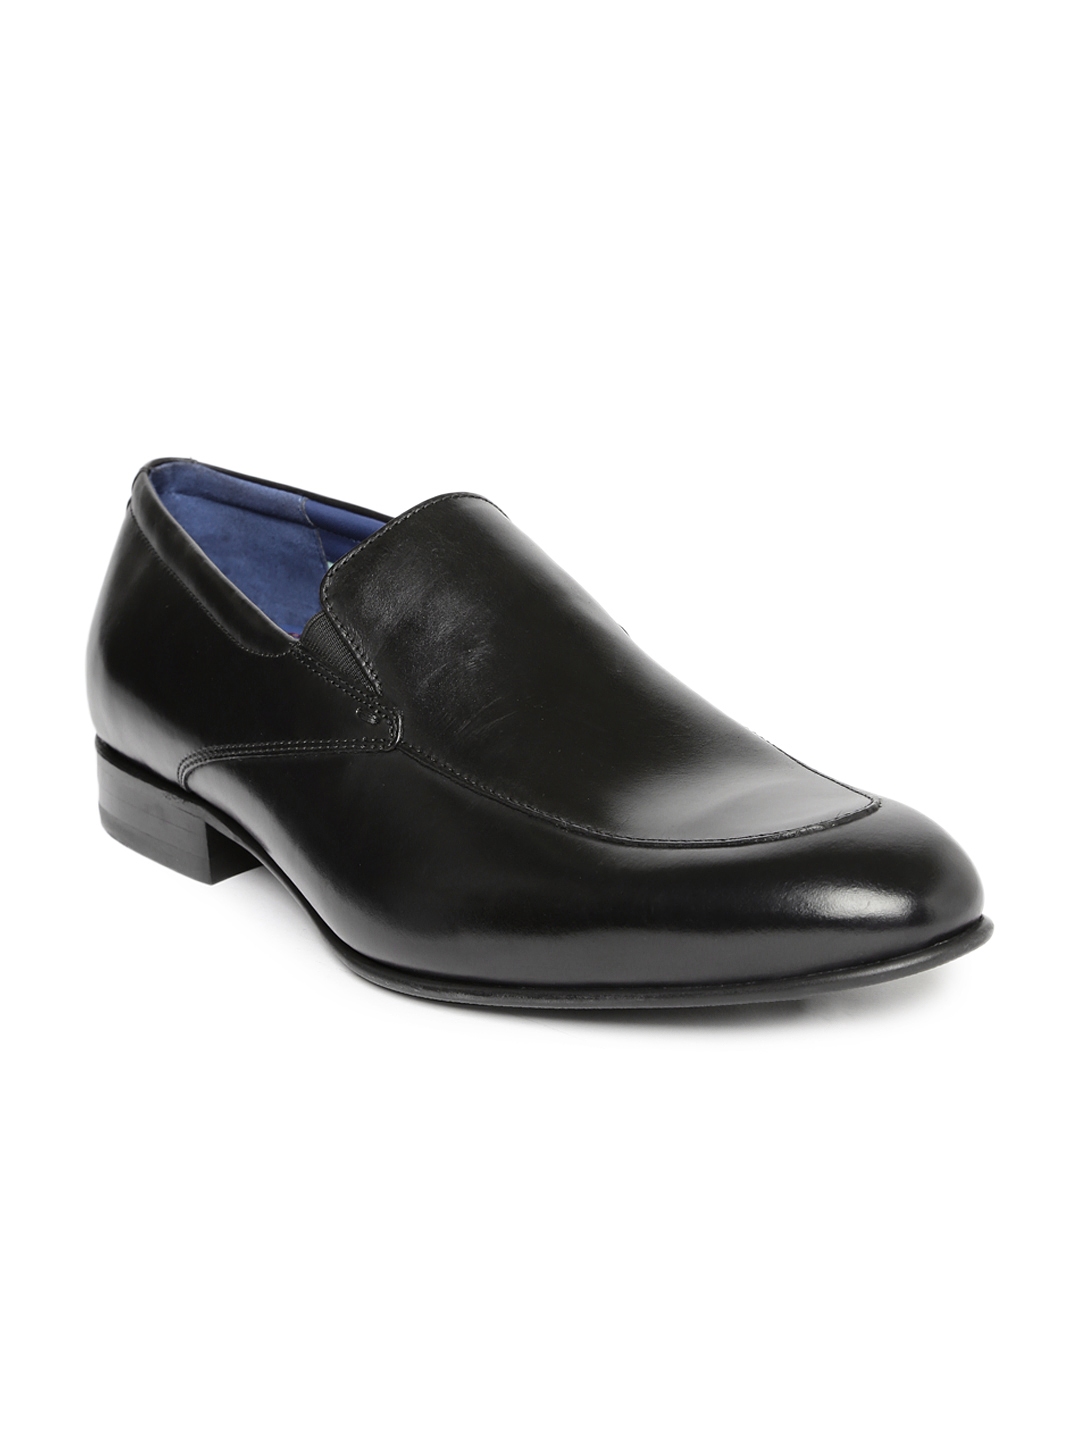 Buy Language Men Black Leather Formal Slip Ons - Formal Shoes for Men ...